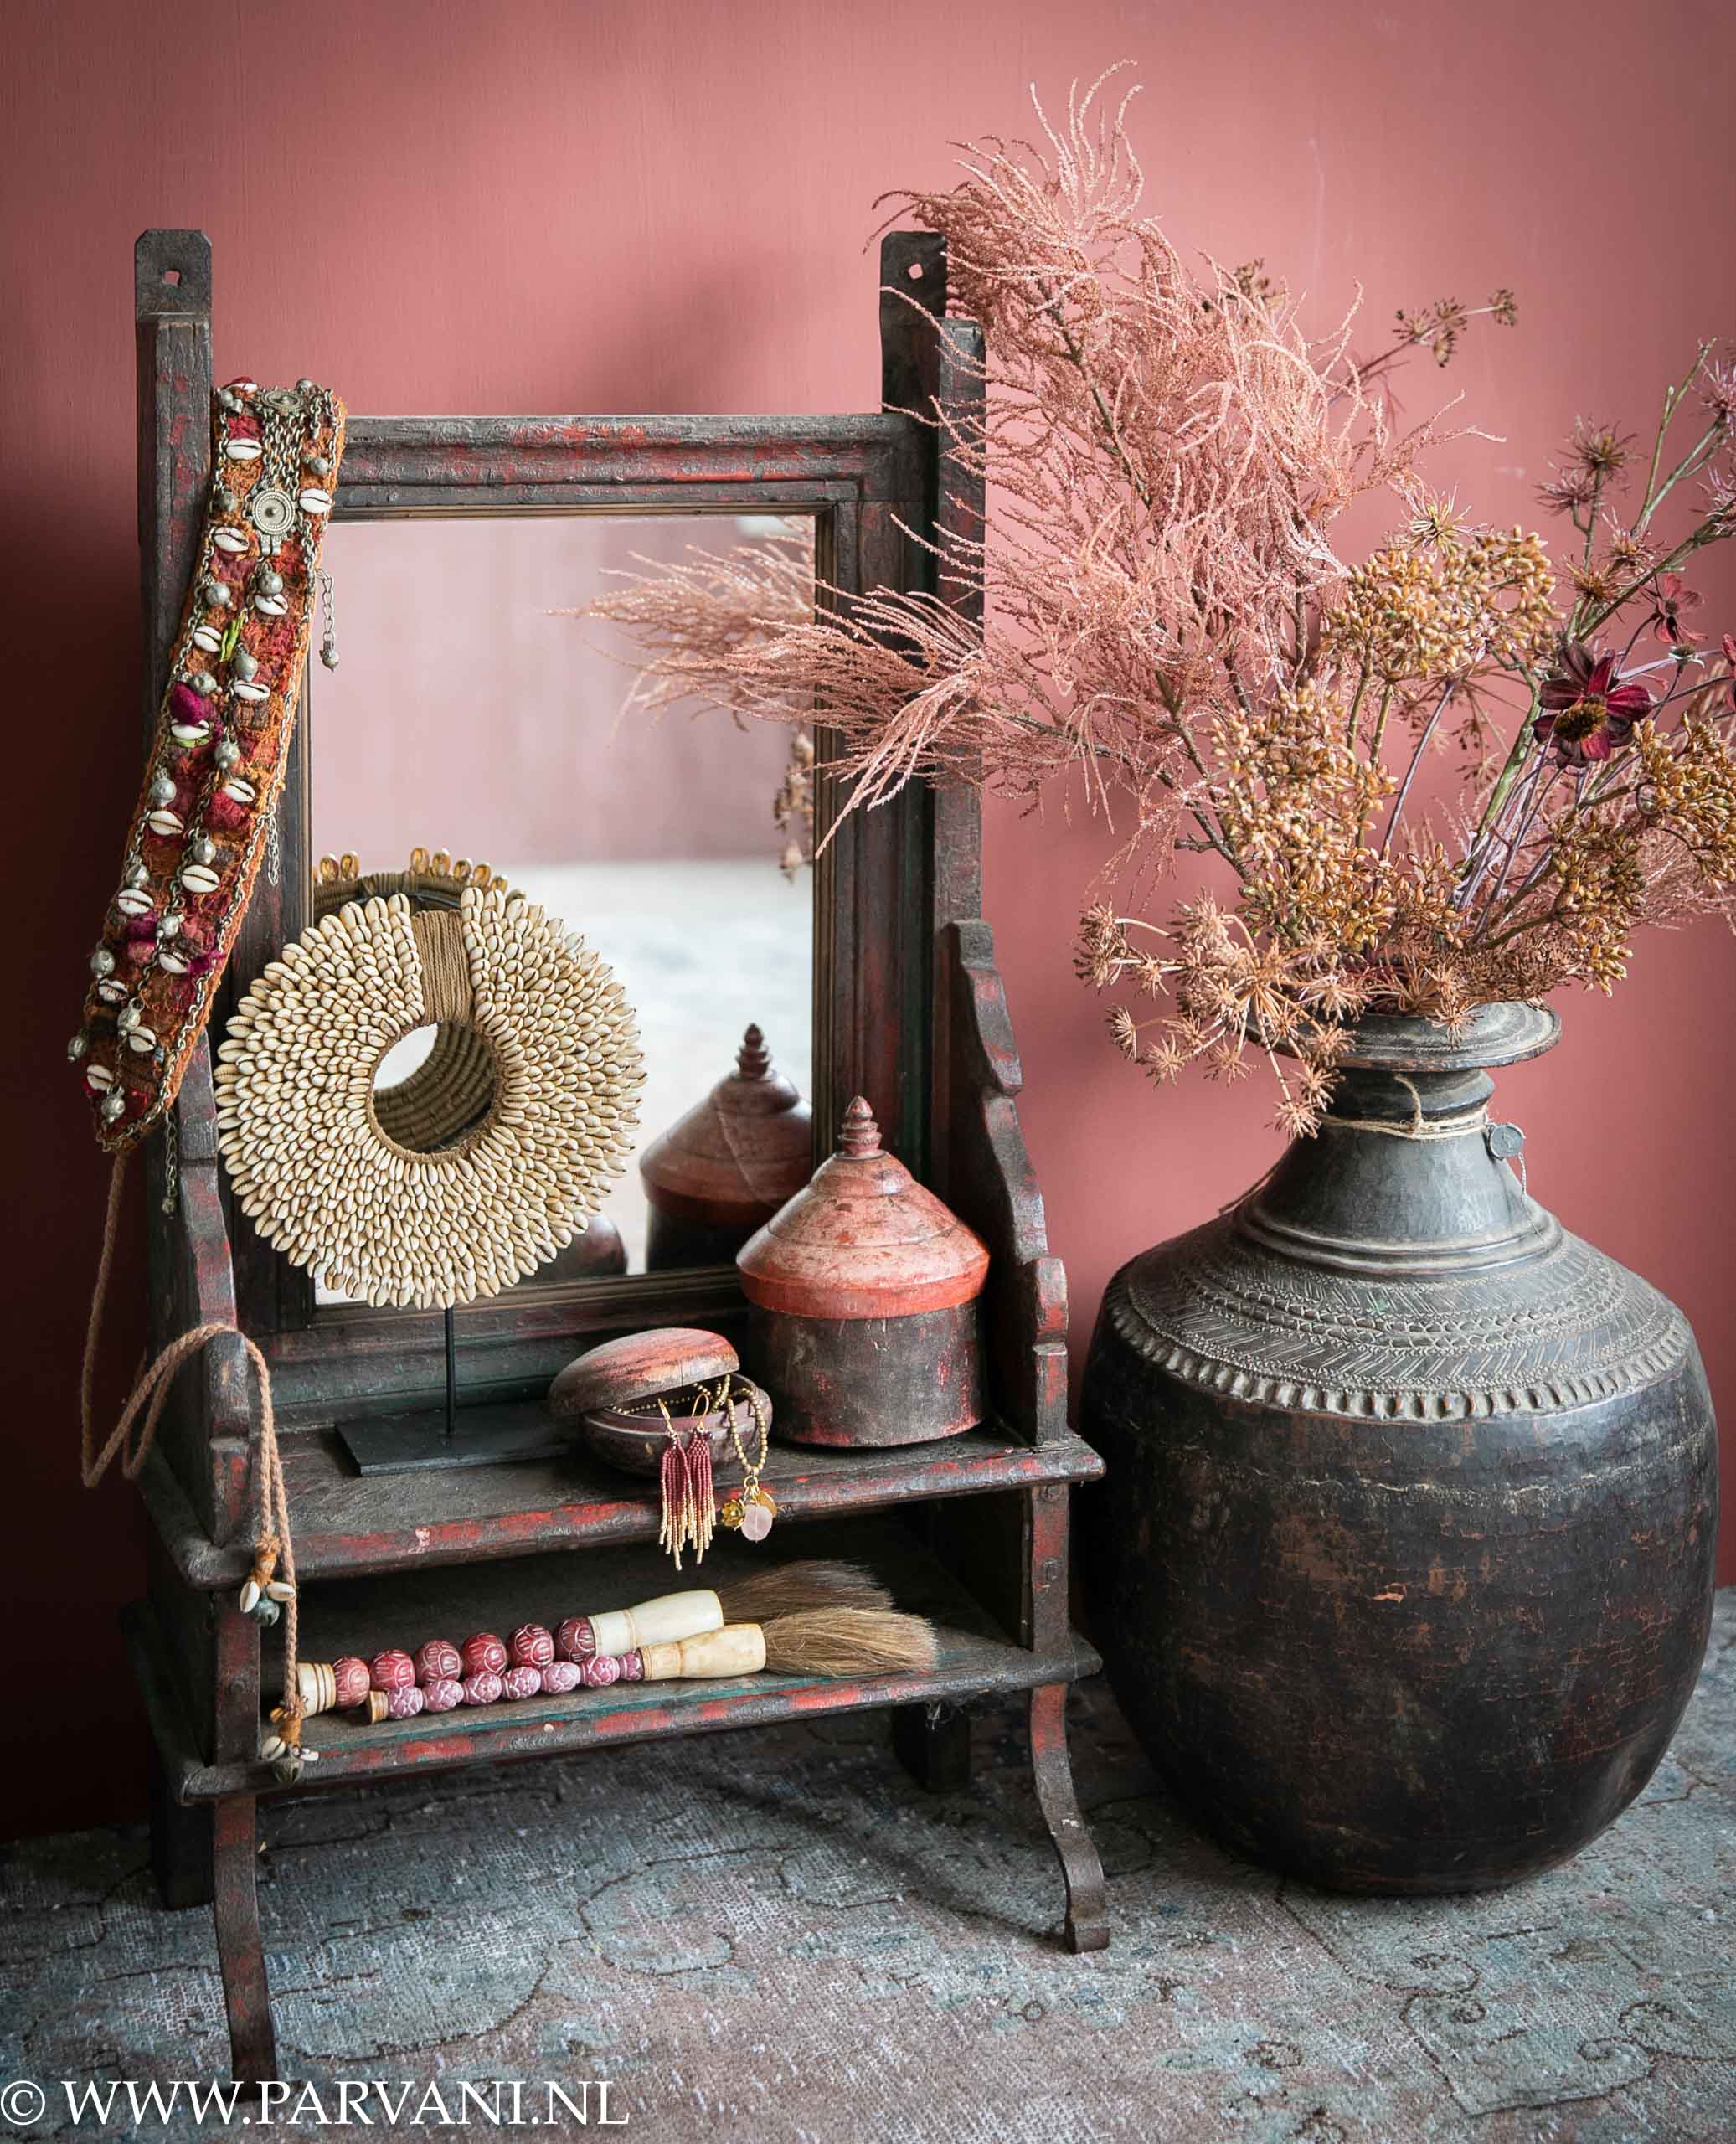 Spiegel hangkastje oud India rood bruin tikka doosjes kwasten vaas brons zijdenbloemen